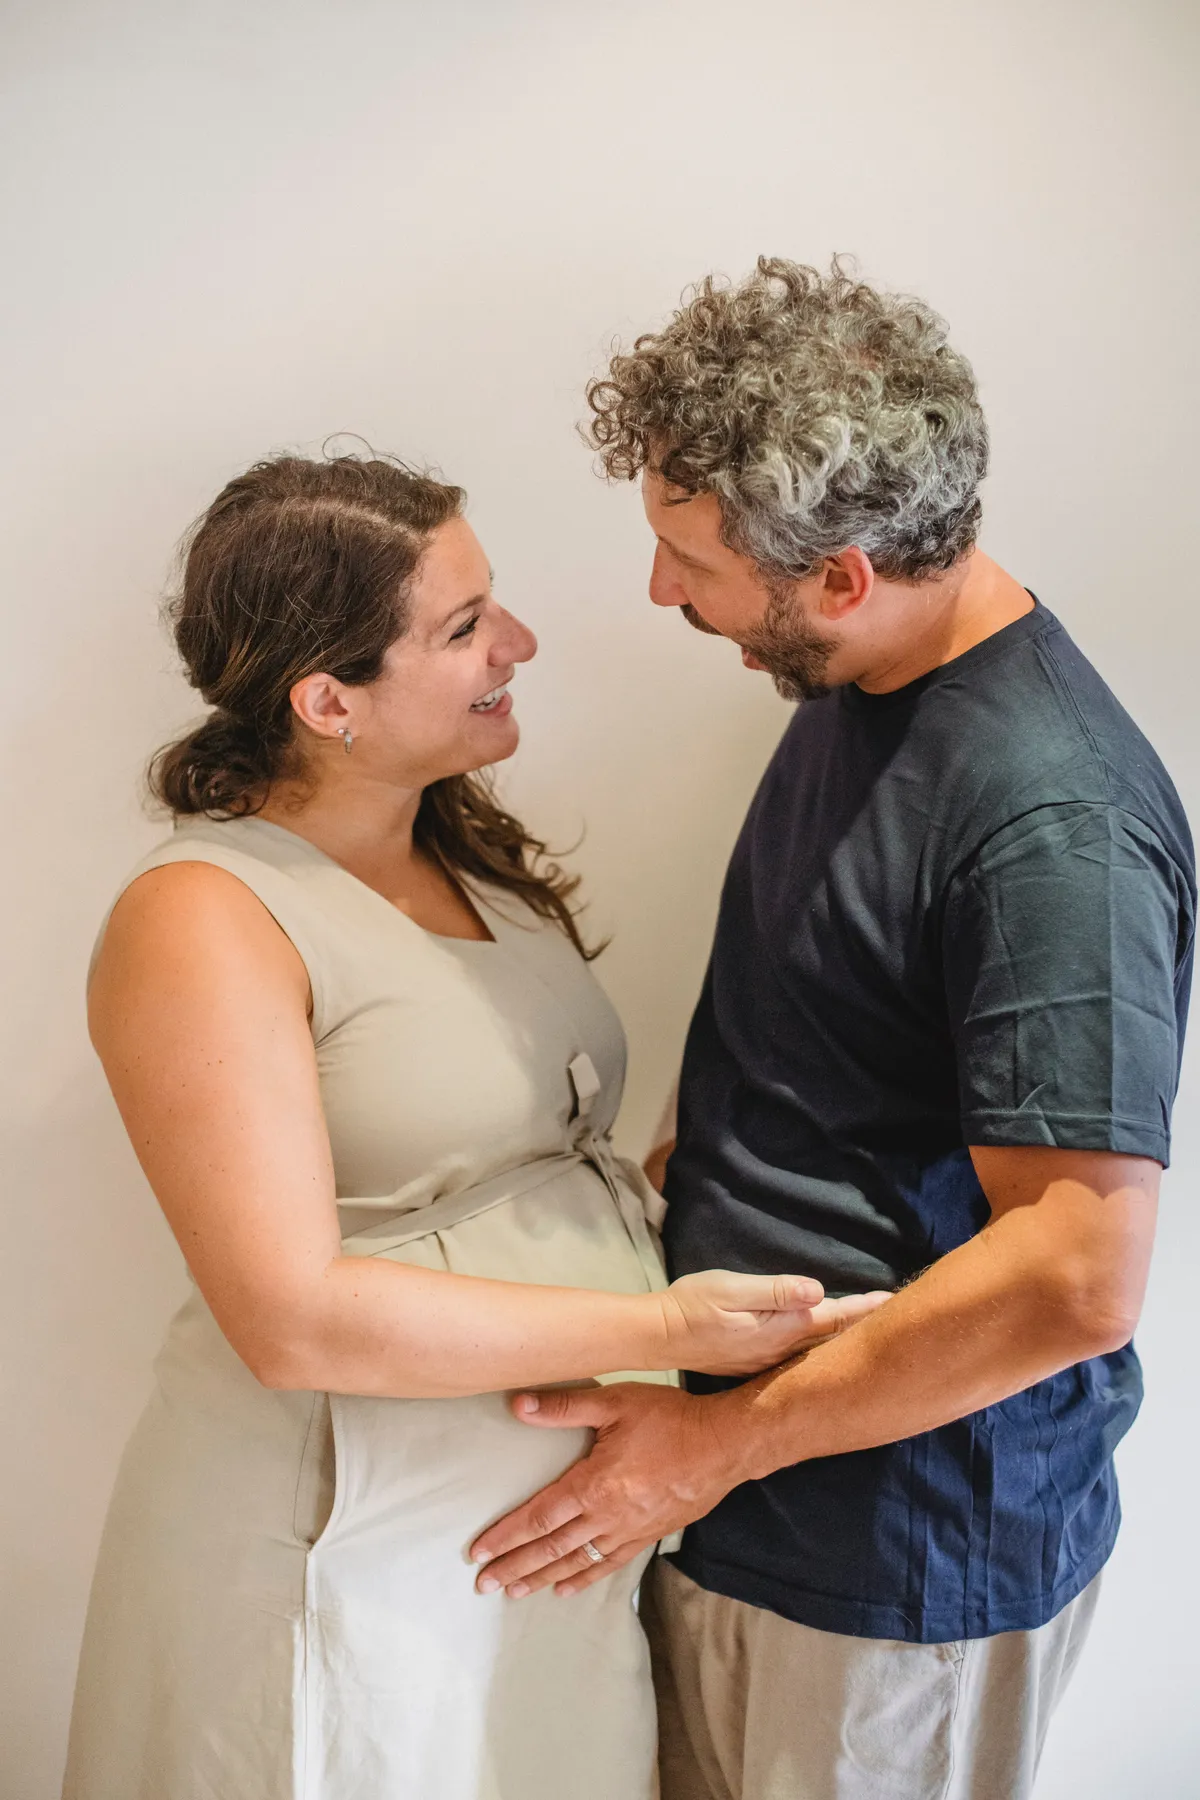 Le mari et la femme étaient heureux avec leur nouveau bébé, quel que soit son sexe. | Source : Pexel